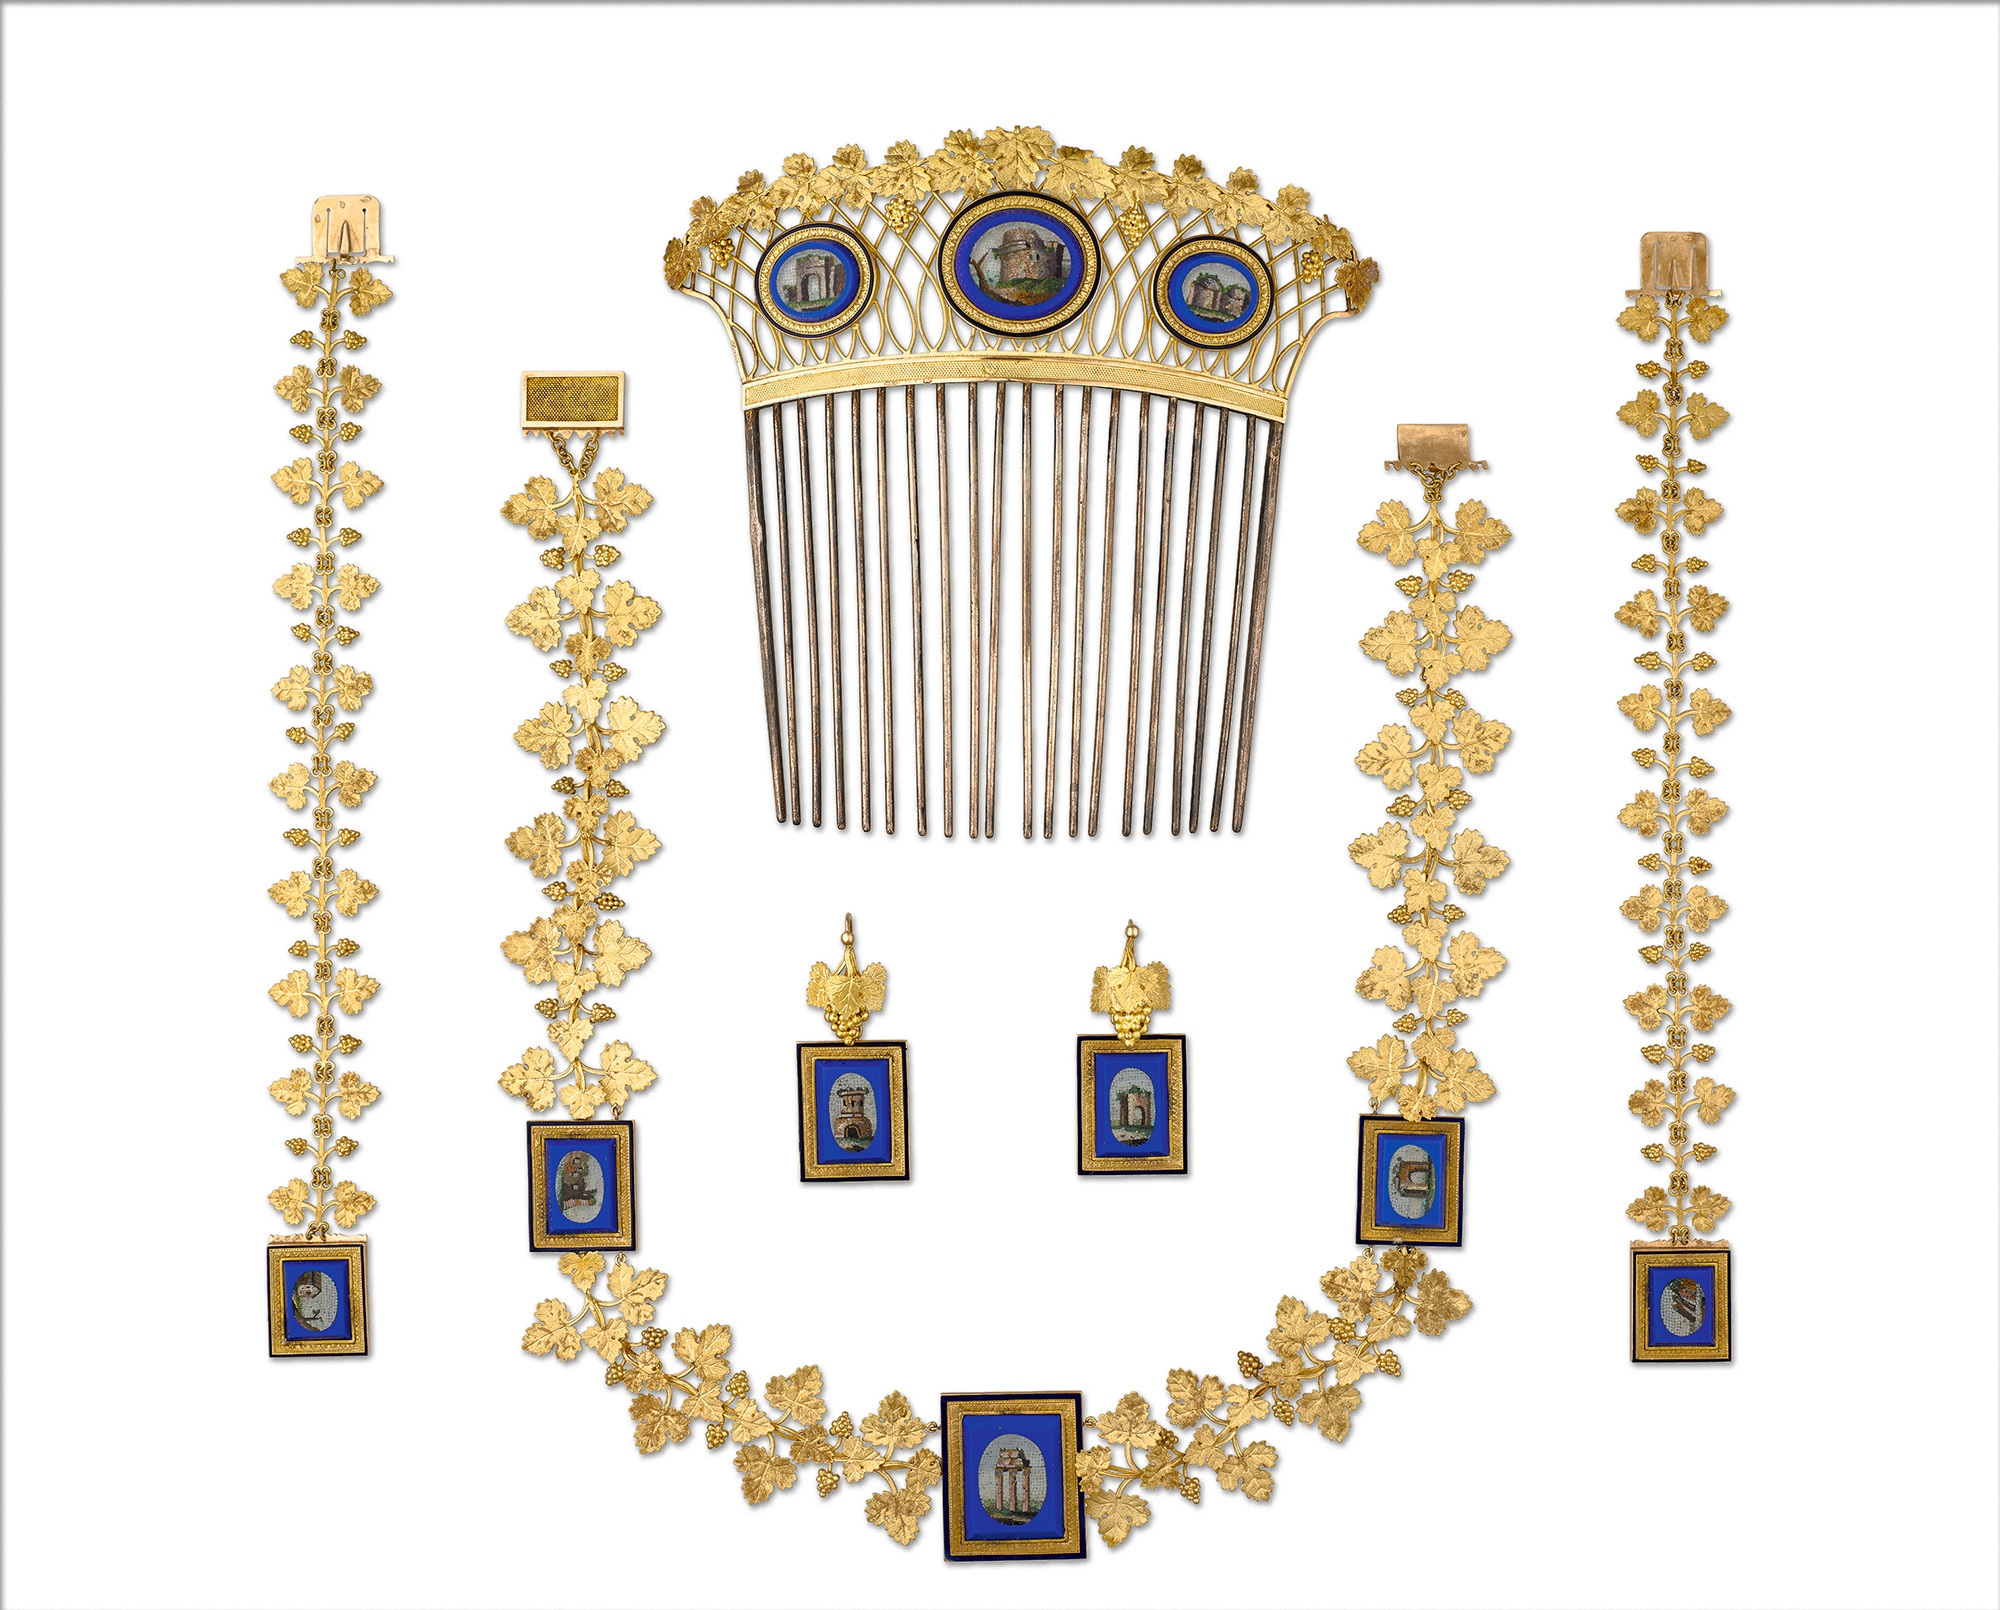 フランソワ=ルニョー・ニト 《ミクロモザイクの施された、皇妃マリー=ルイーズの日中用パリュール》 1810年 ゴールド、青の溶融ガラスで縁取られたミクロモザイク ルーヴル美術館、パリ 